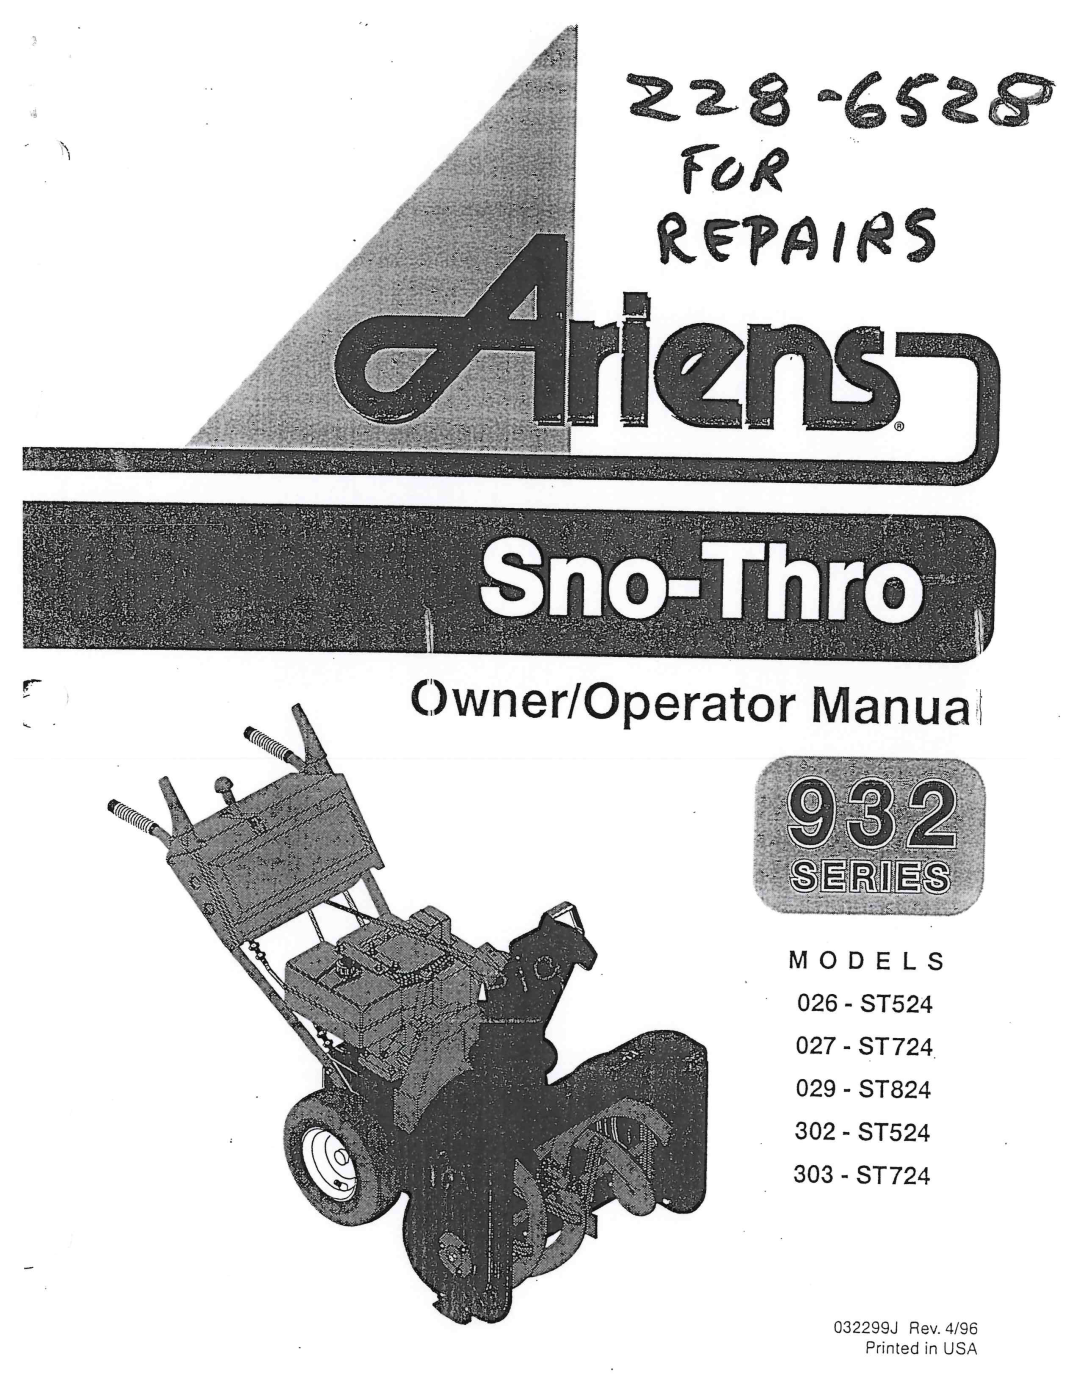 Ariens 303-ST724, 302-ST524, 027-ST724, 029-ST824, 026-ST524 manual 